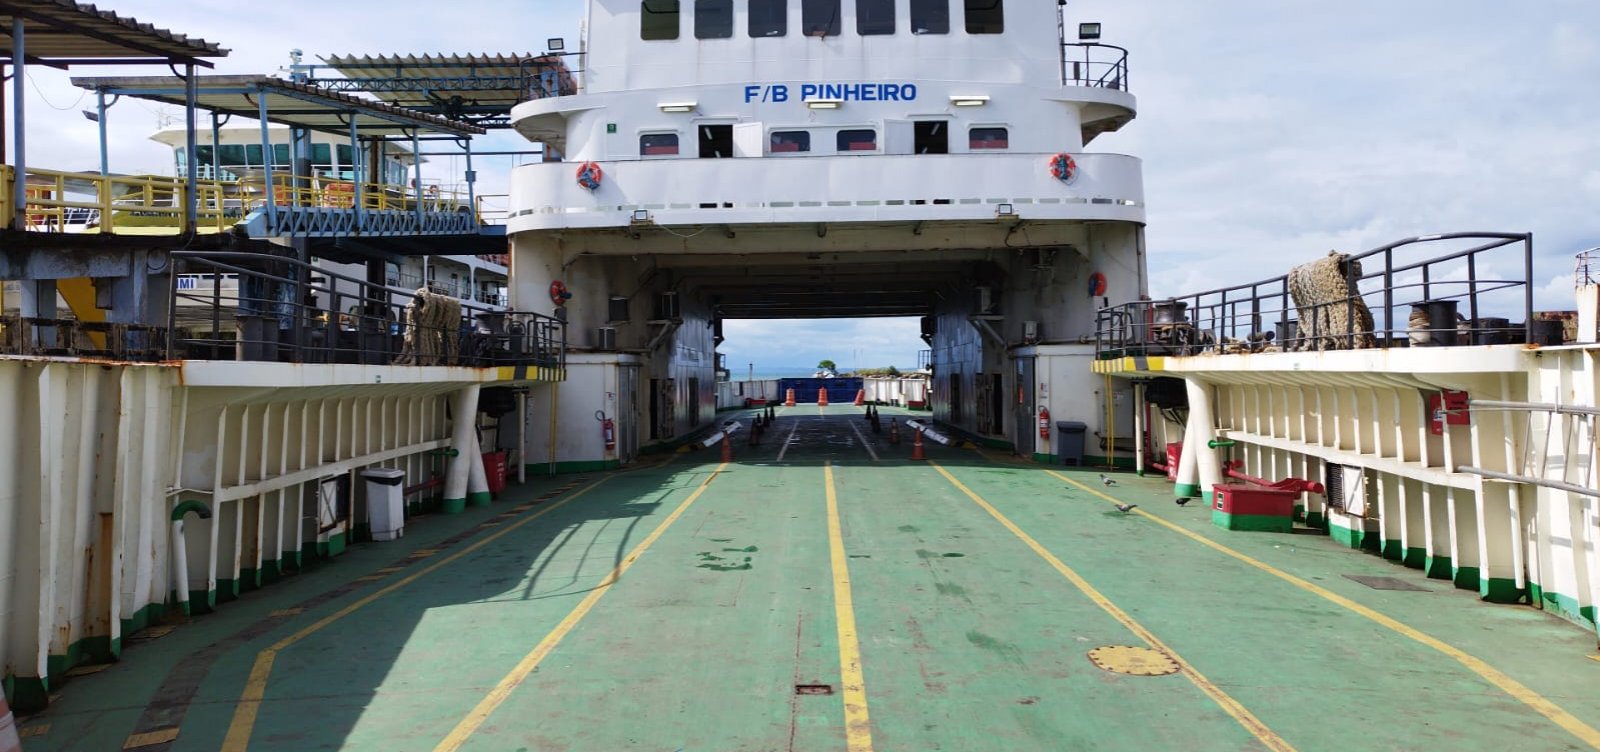 Horários do ferry-boat são alterados temporariamente para implantação de novas rampas 